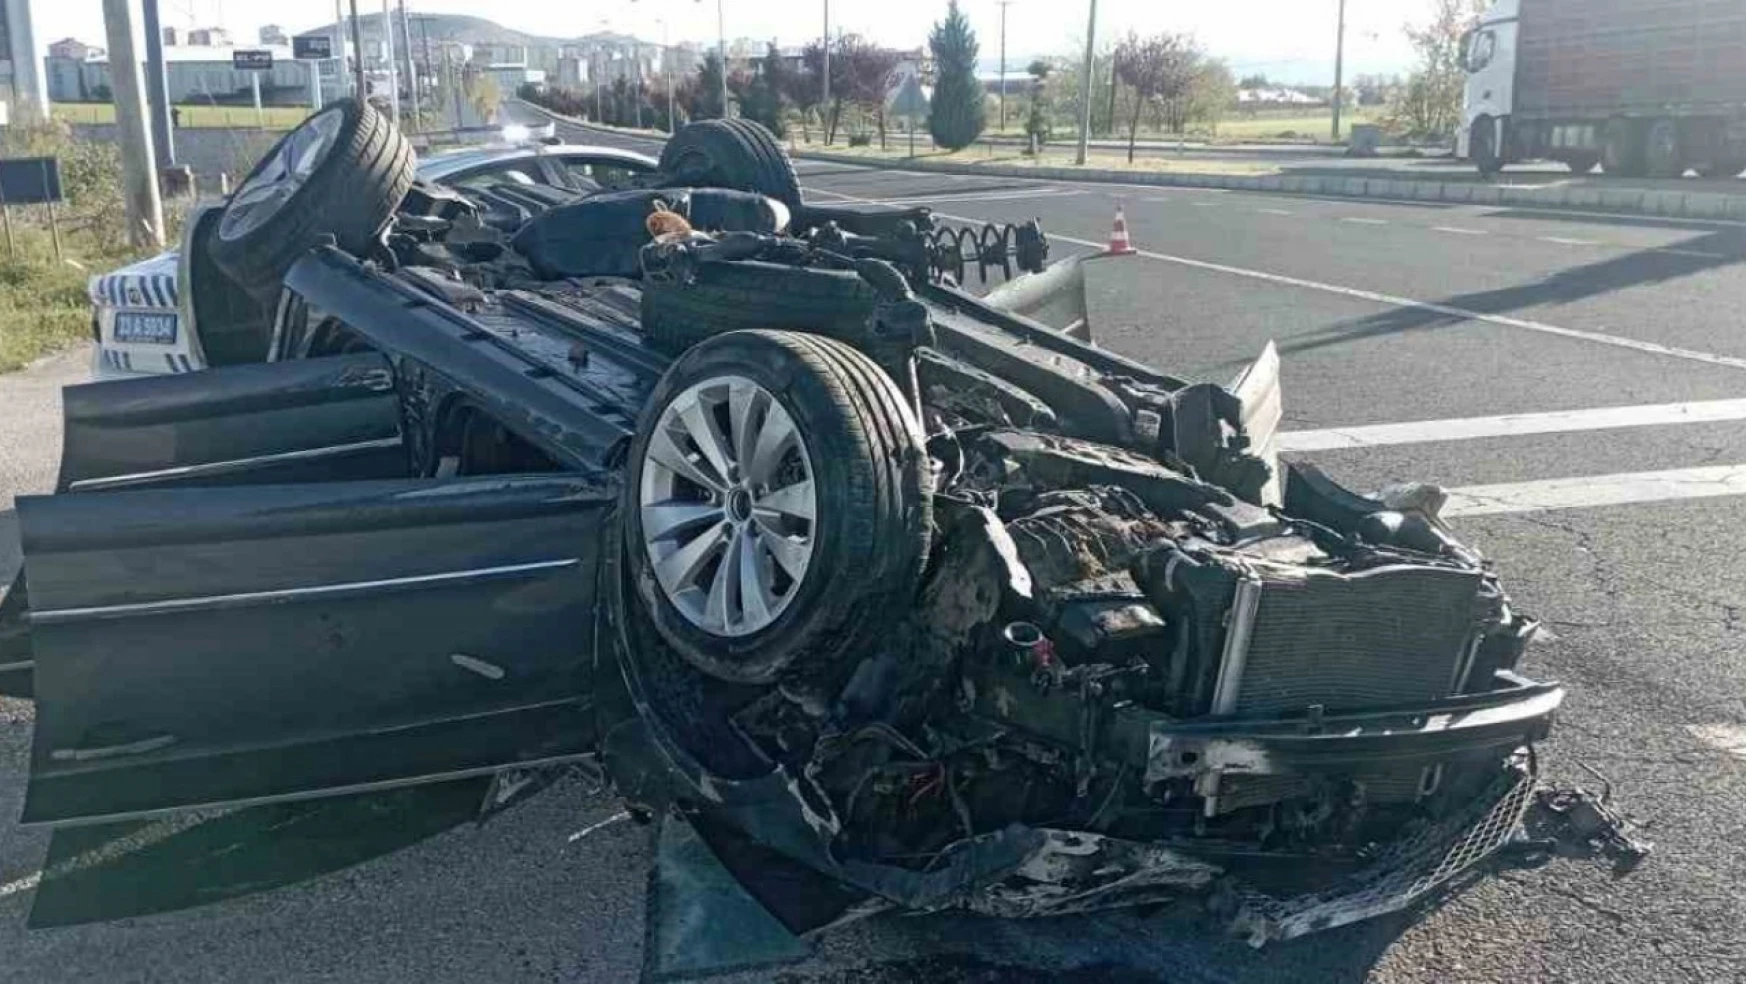 Elazığ'da karşı şeride geçen otomobil ters döndü: 1 ölü, 2 yaralı